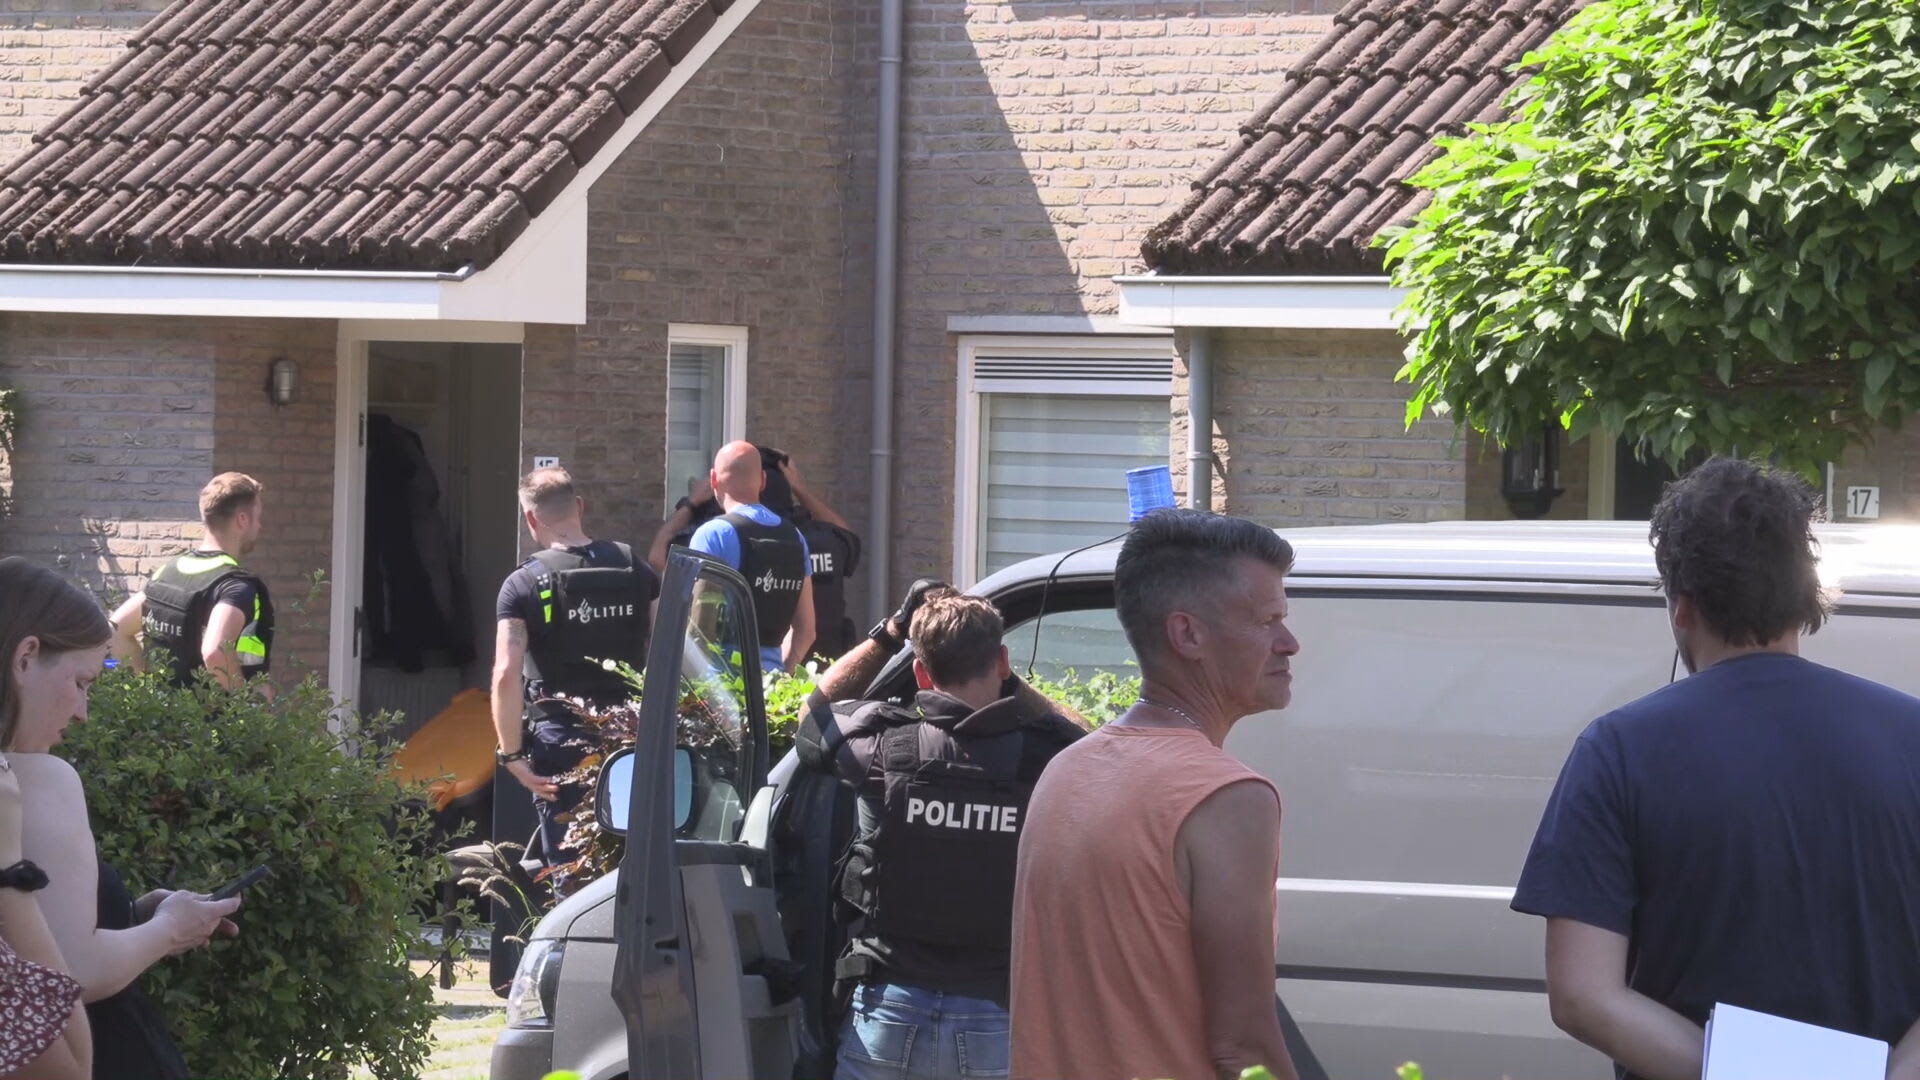 Persoon met mogelijke vuurwapens verschanst zich al uren in woning Lichtenvoorde, huizen ontruimd